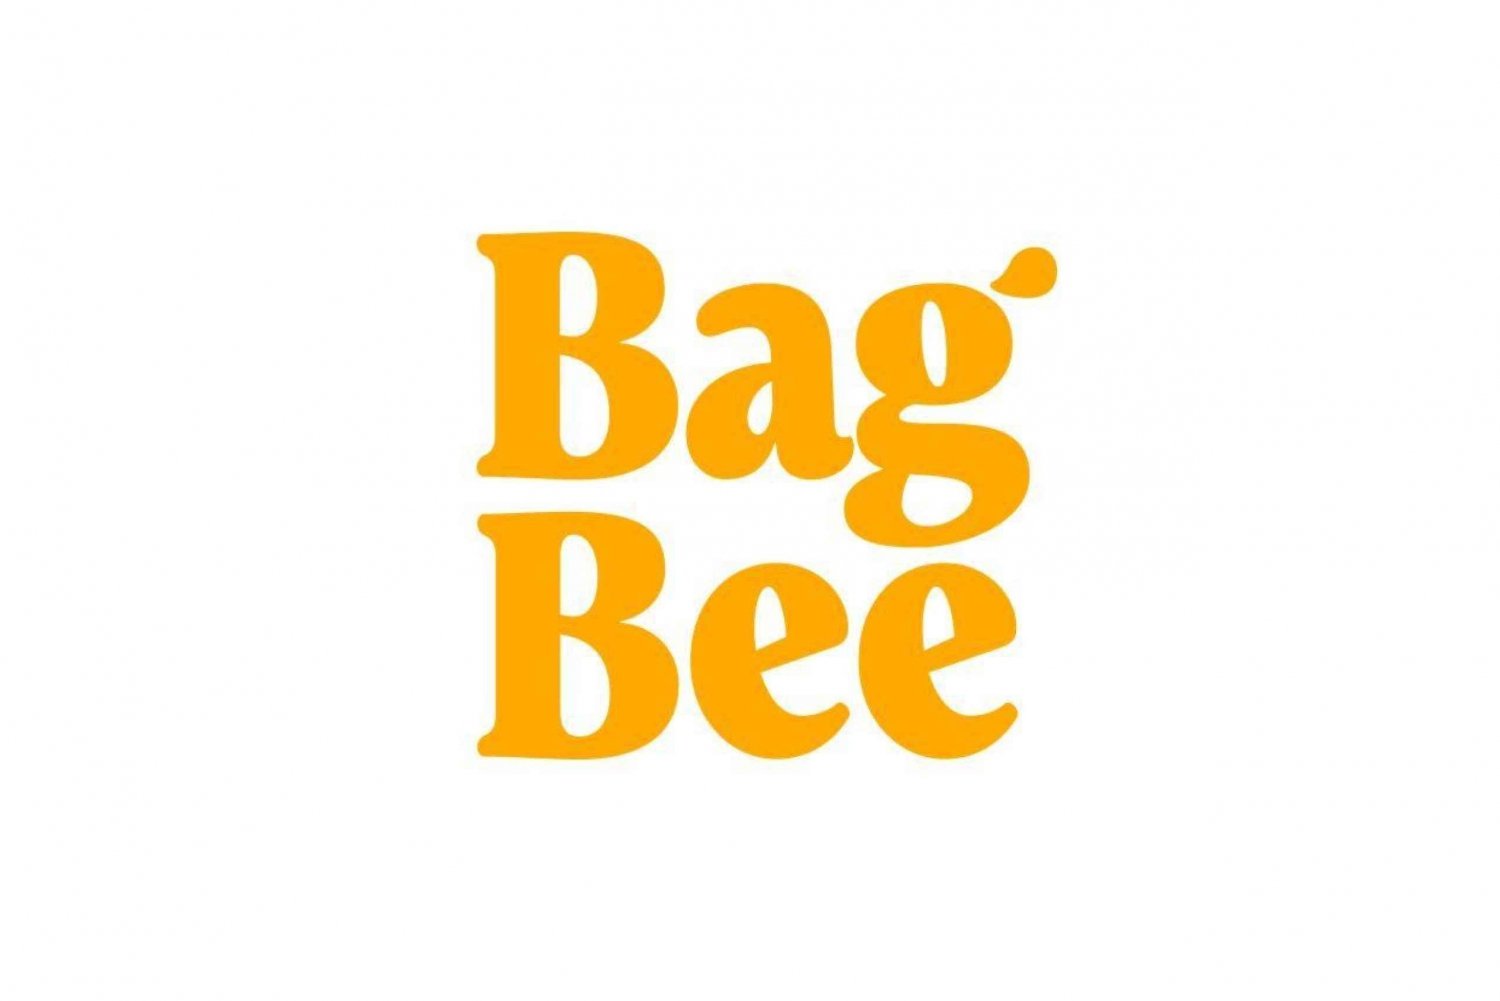 BagBee flygbolag checkar in från hotell & hem (upphämtning på kvällen)